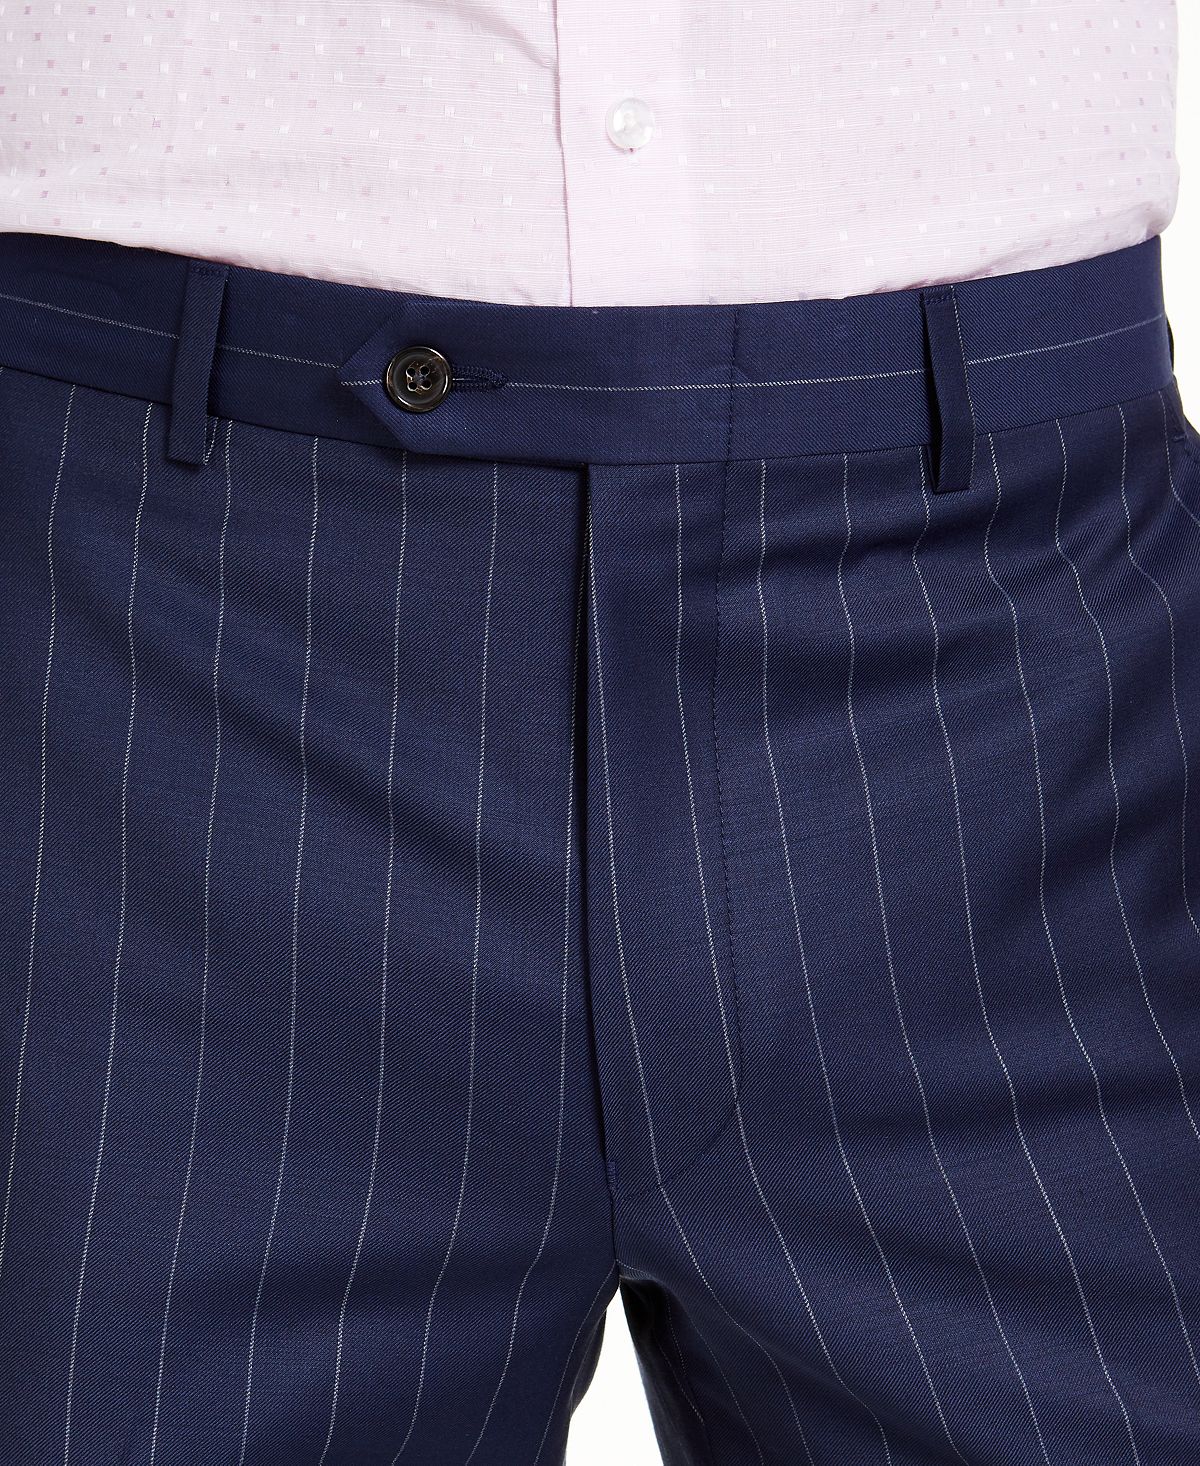 Lauren Ralph Lauren Mens Edgewood Classic Fit Business Suit Pants Blue  40/30 at Amazon Men's Clothing store